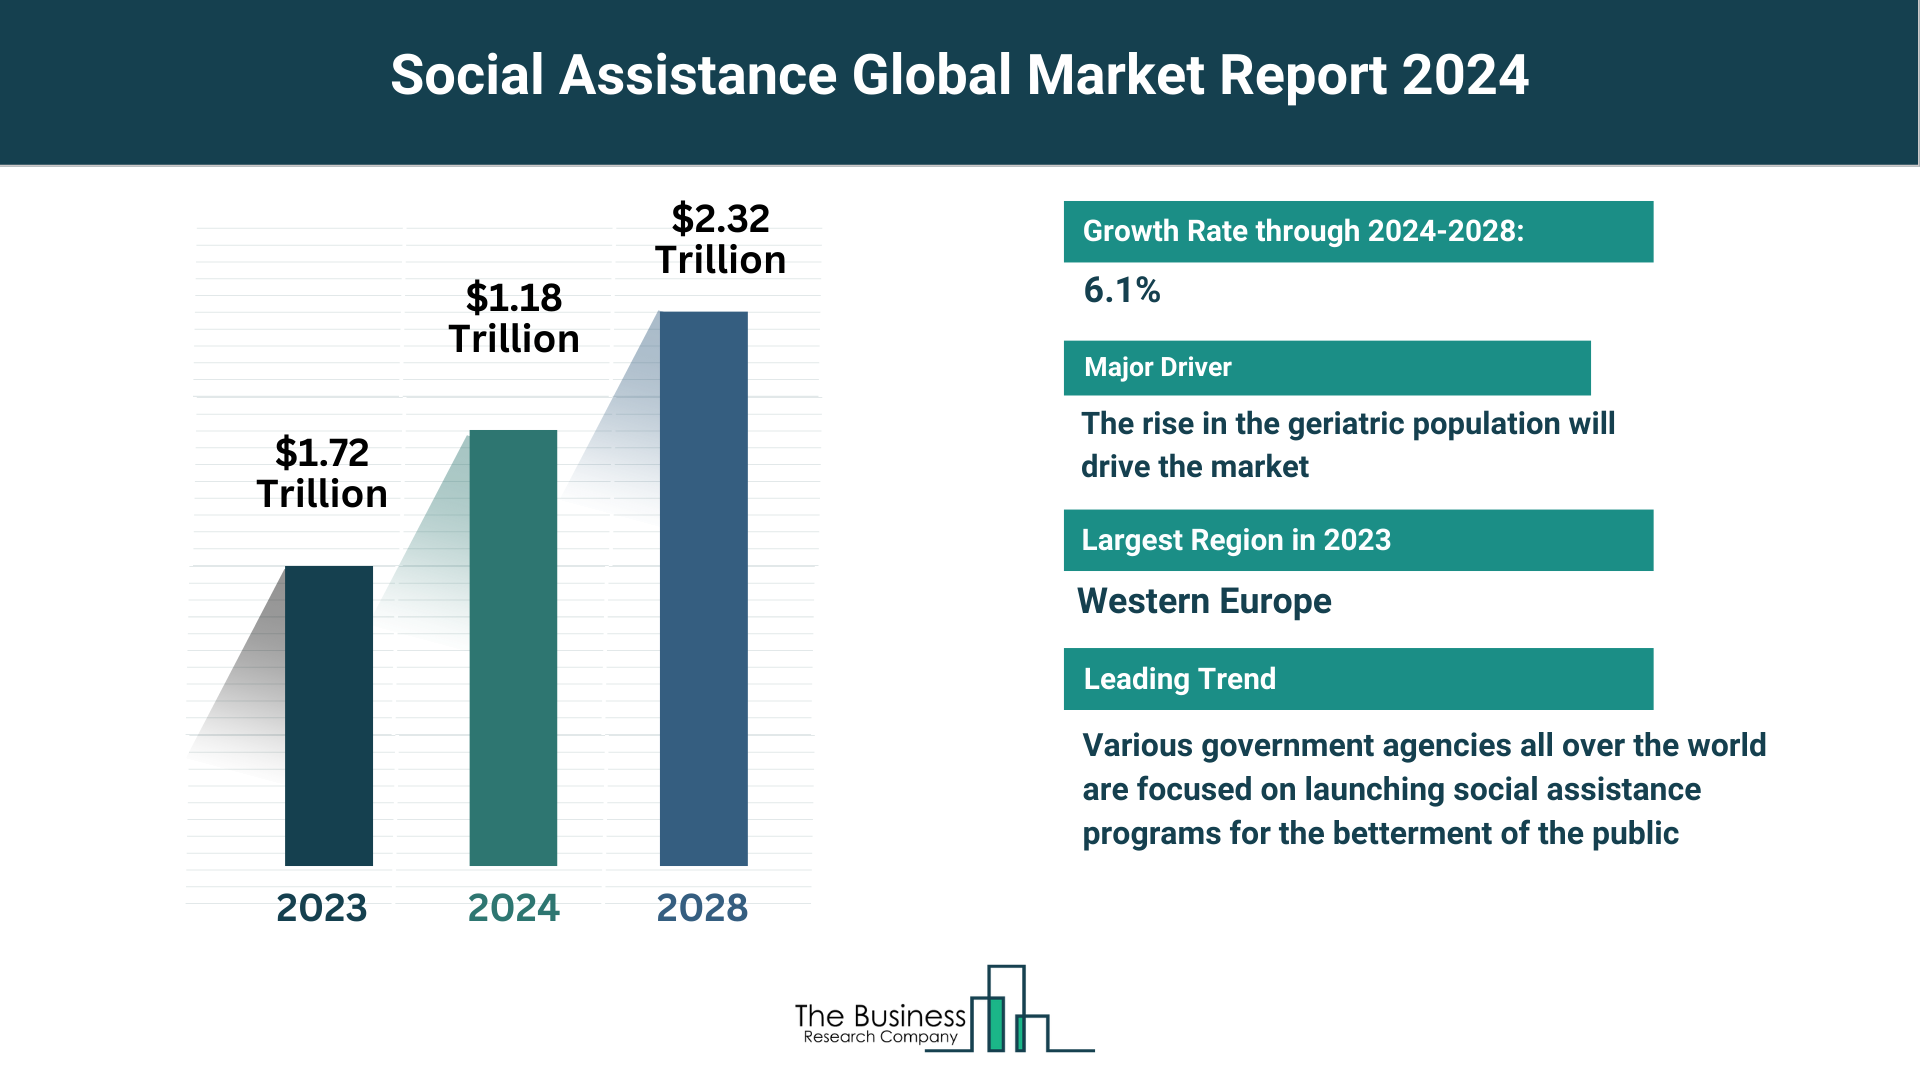 Global Social Assistance Market